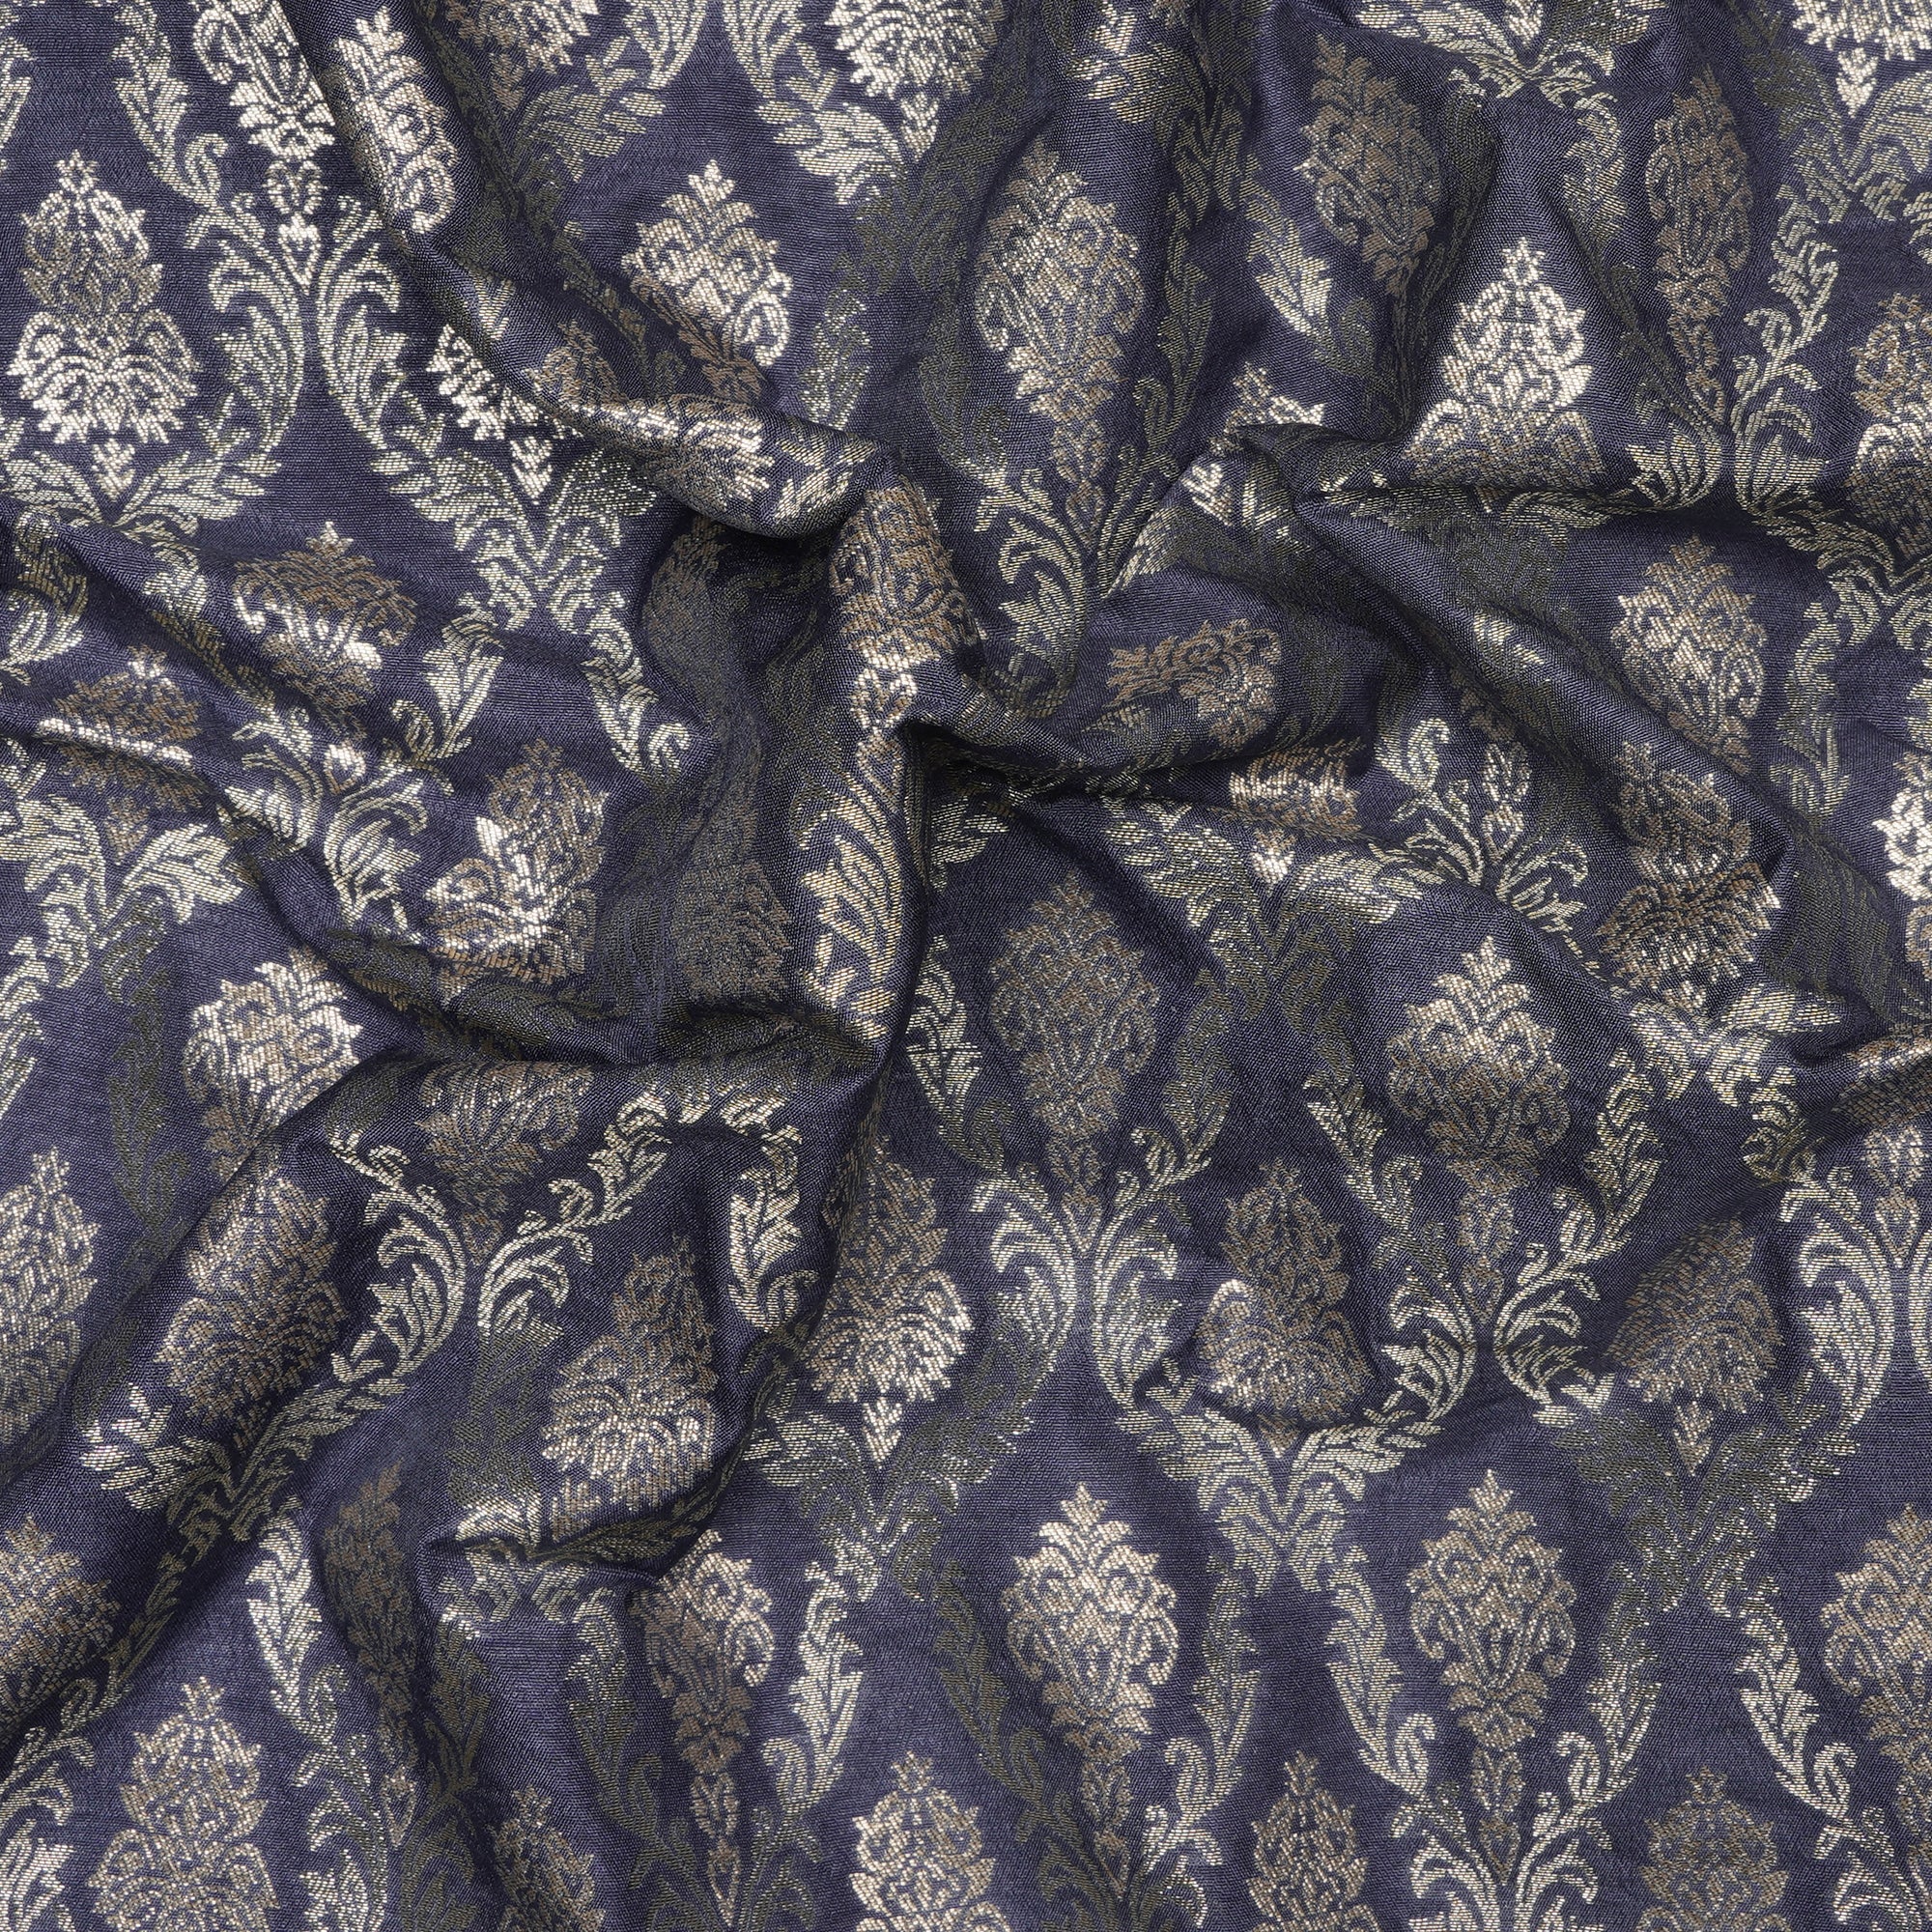 Bleached Denim All Over Floral Pattern Blended Banarasi Brocade Fabric